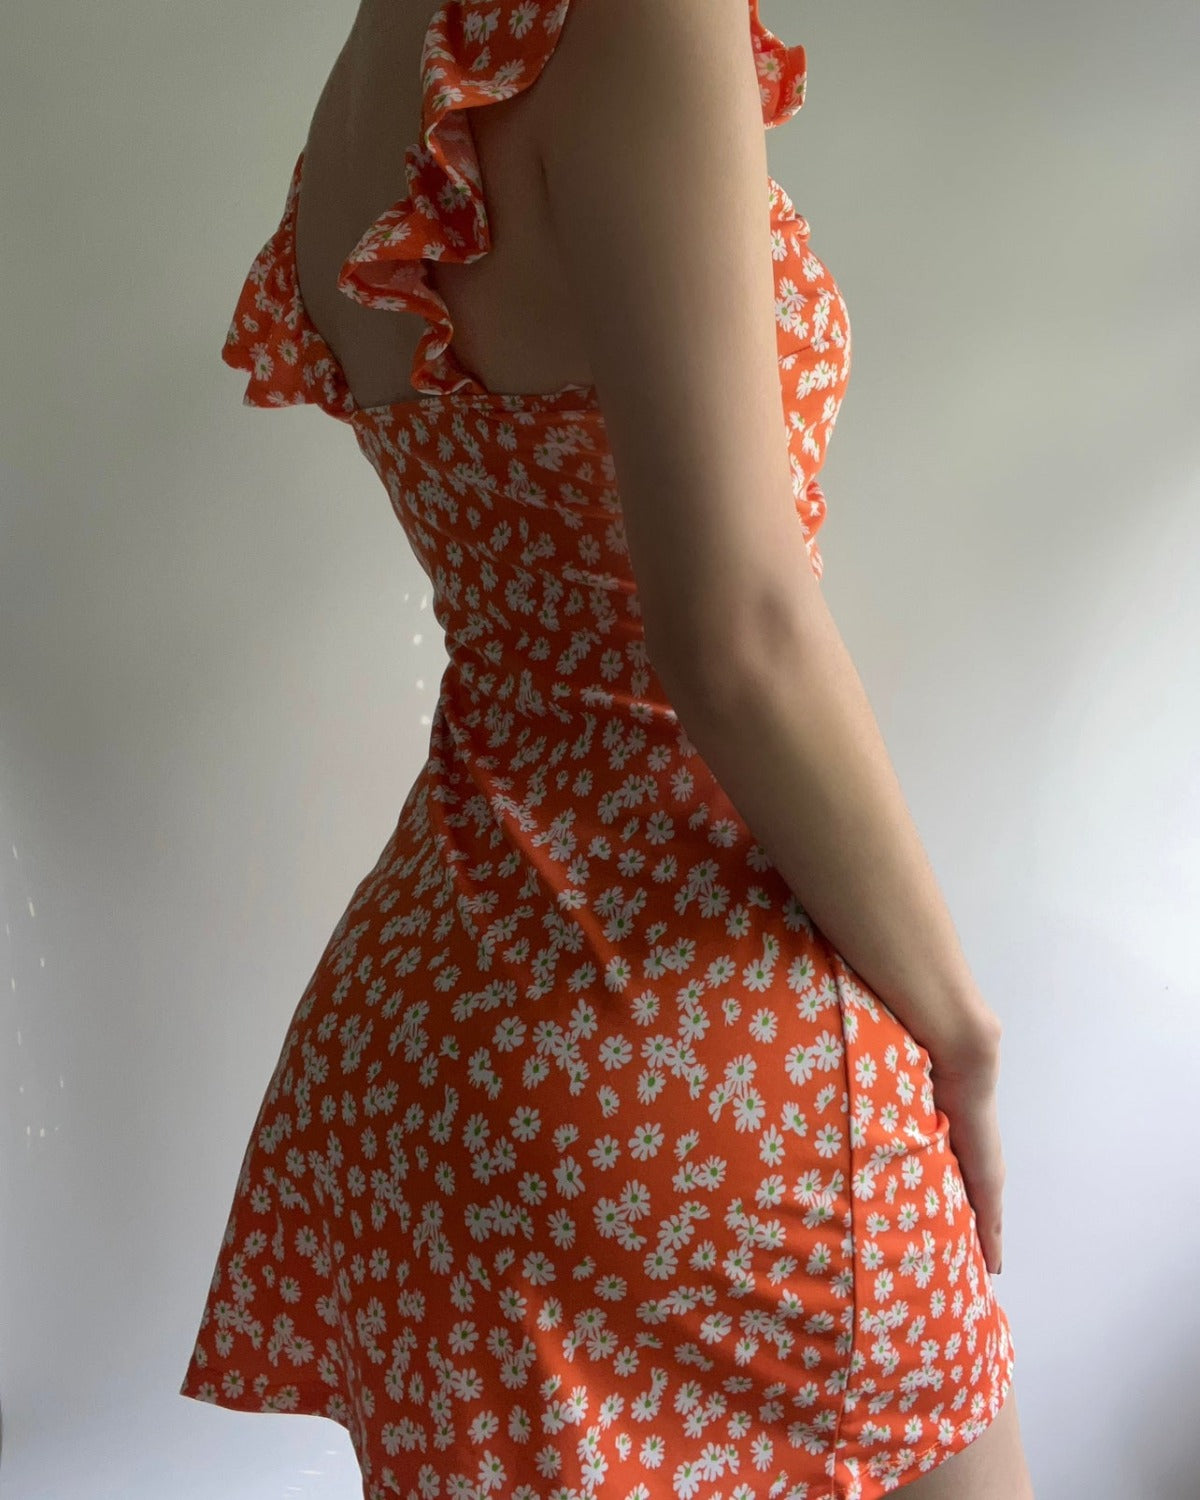 Miley Floral Dress (Orange)